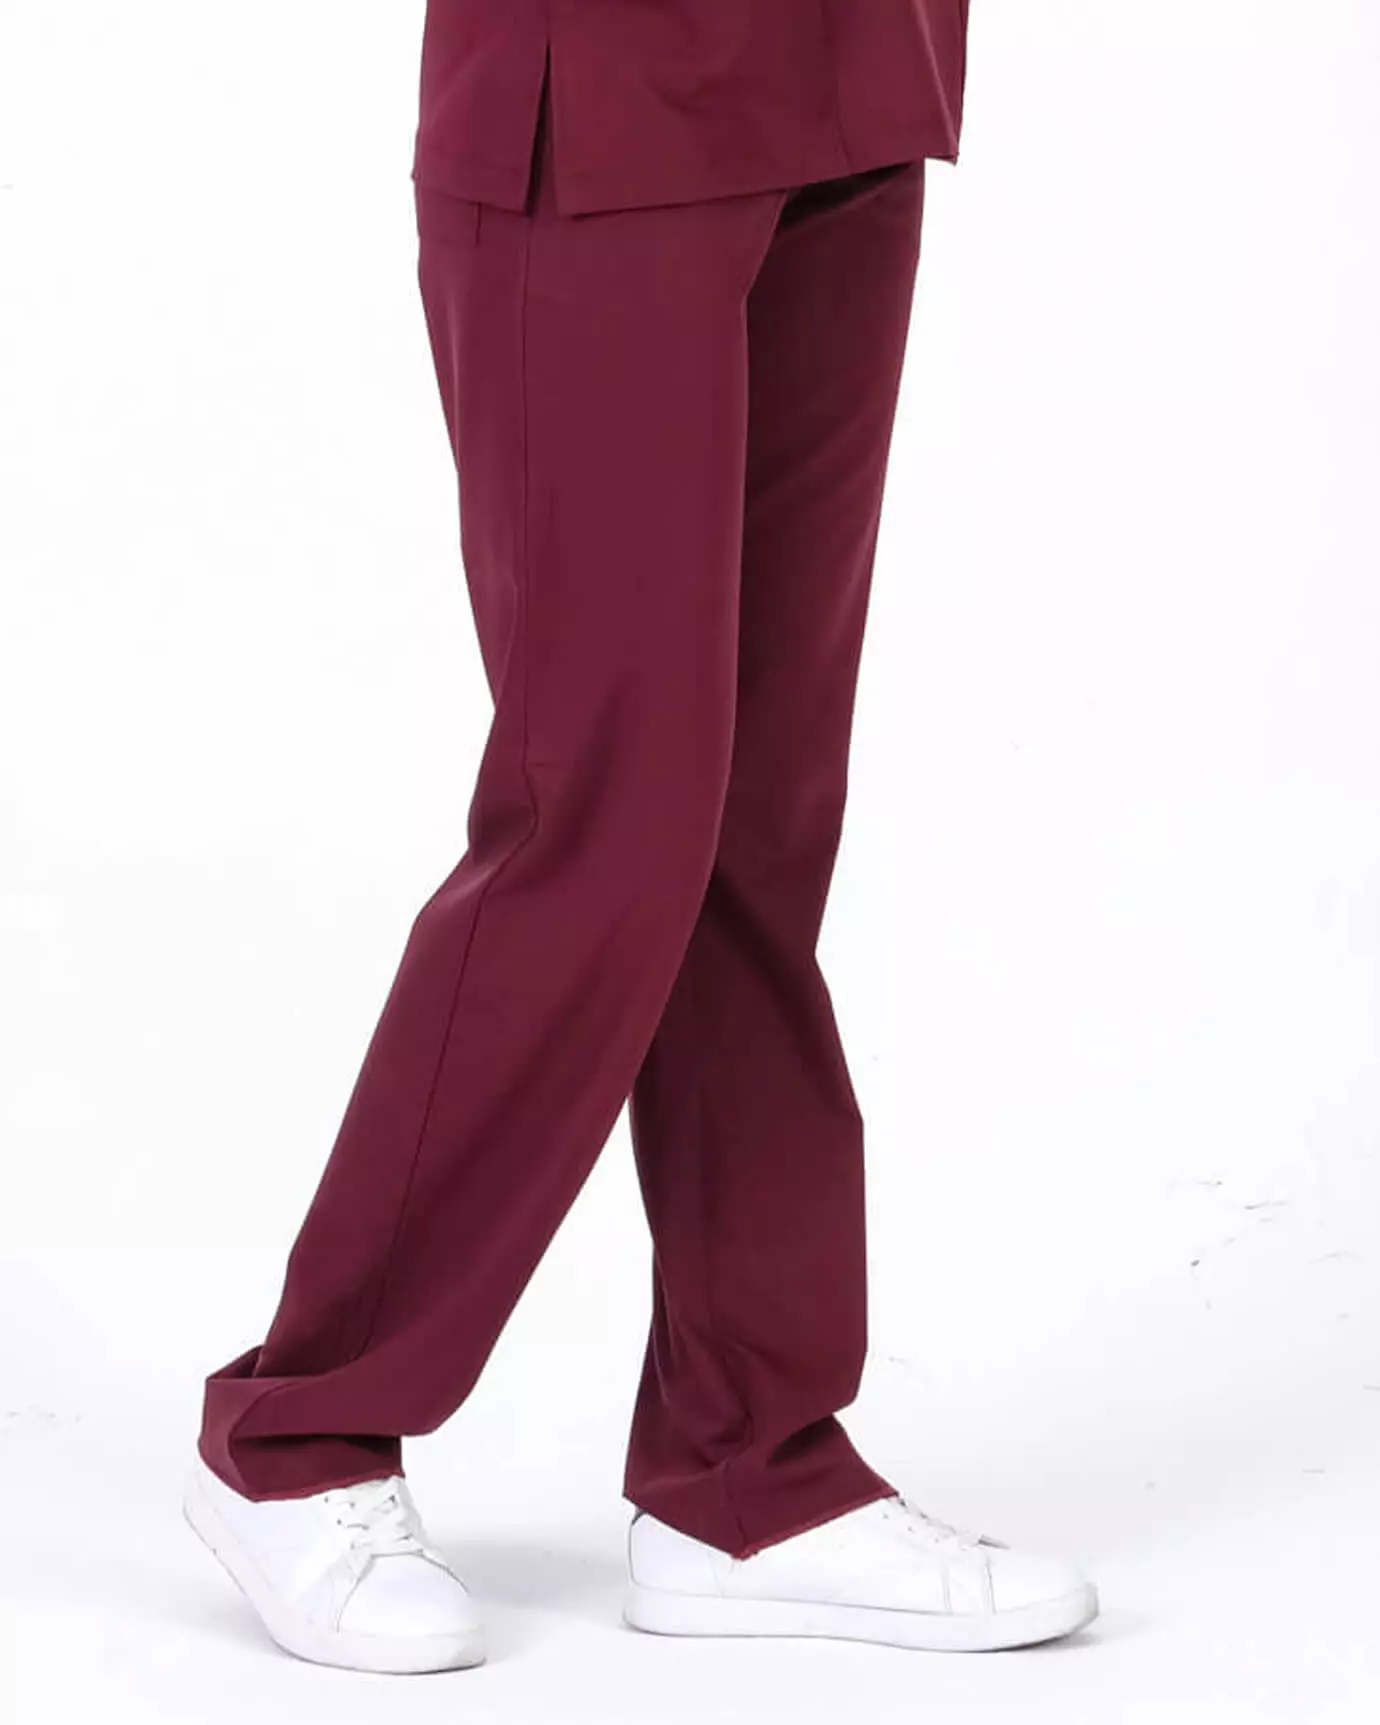 Kadın Hemşire Forması Premium Bordo Pantolon